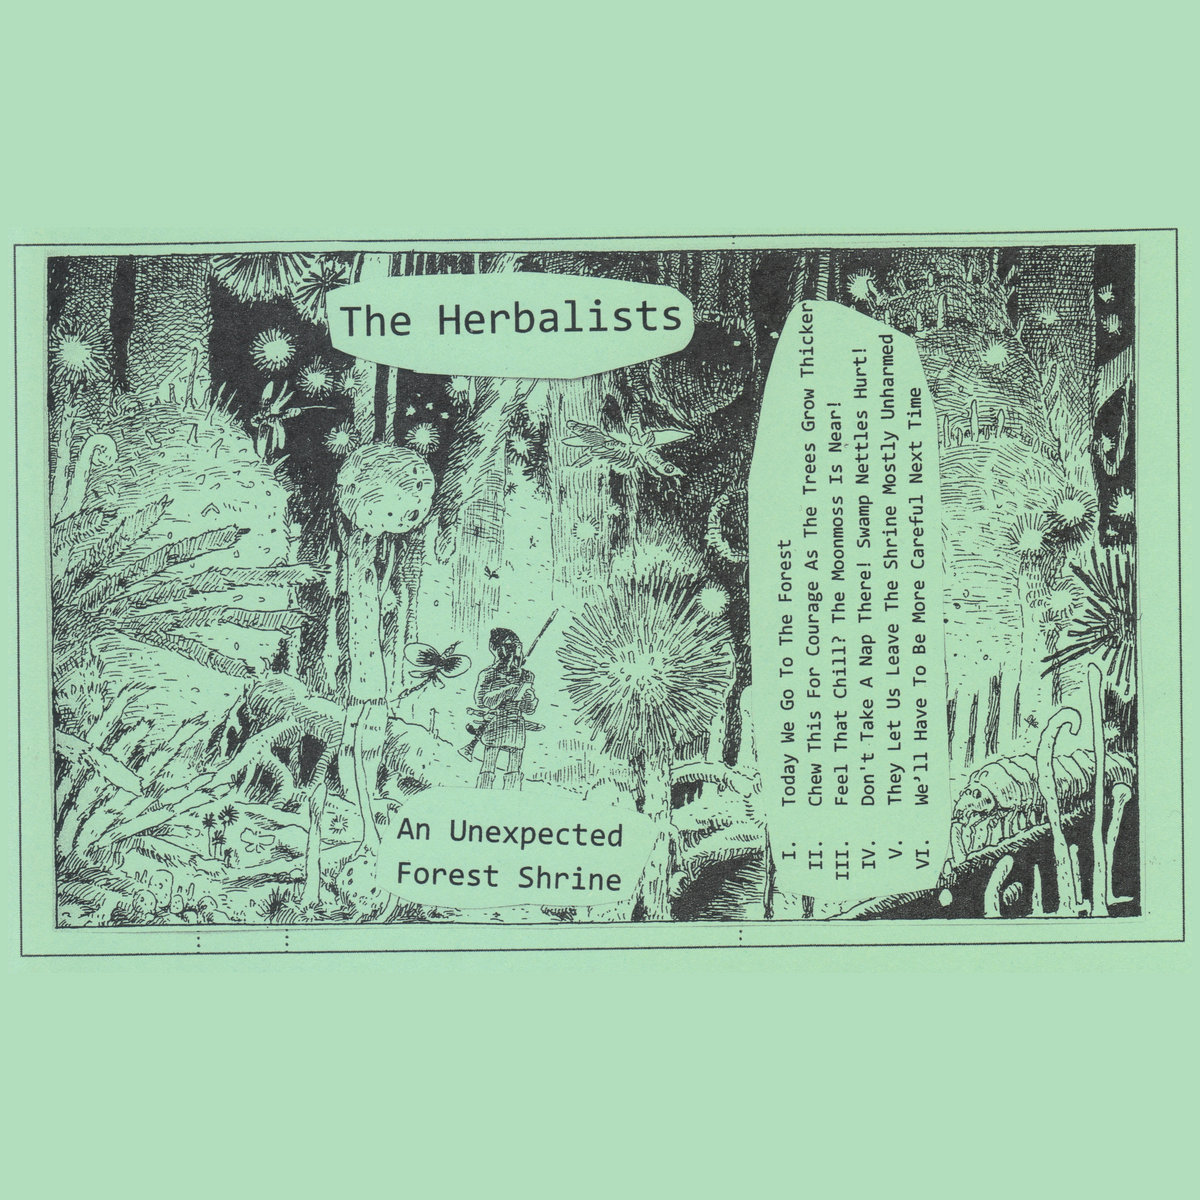 Album associé à la Pop Libre Pastry Stout Quadro par Brasserie du Lez. The Herbalists - An Unexpected Forest Shrine